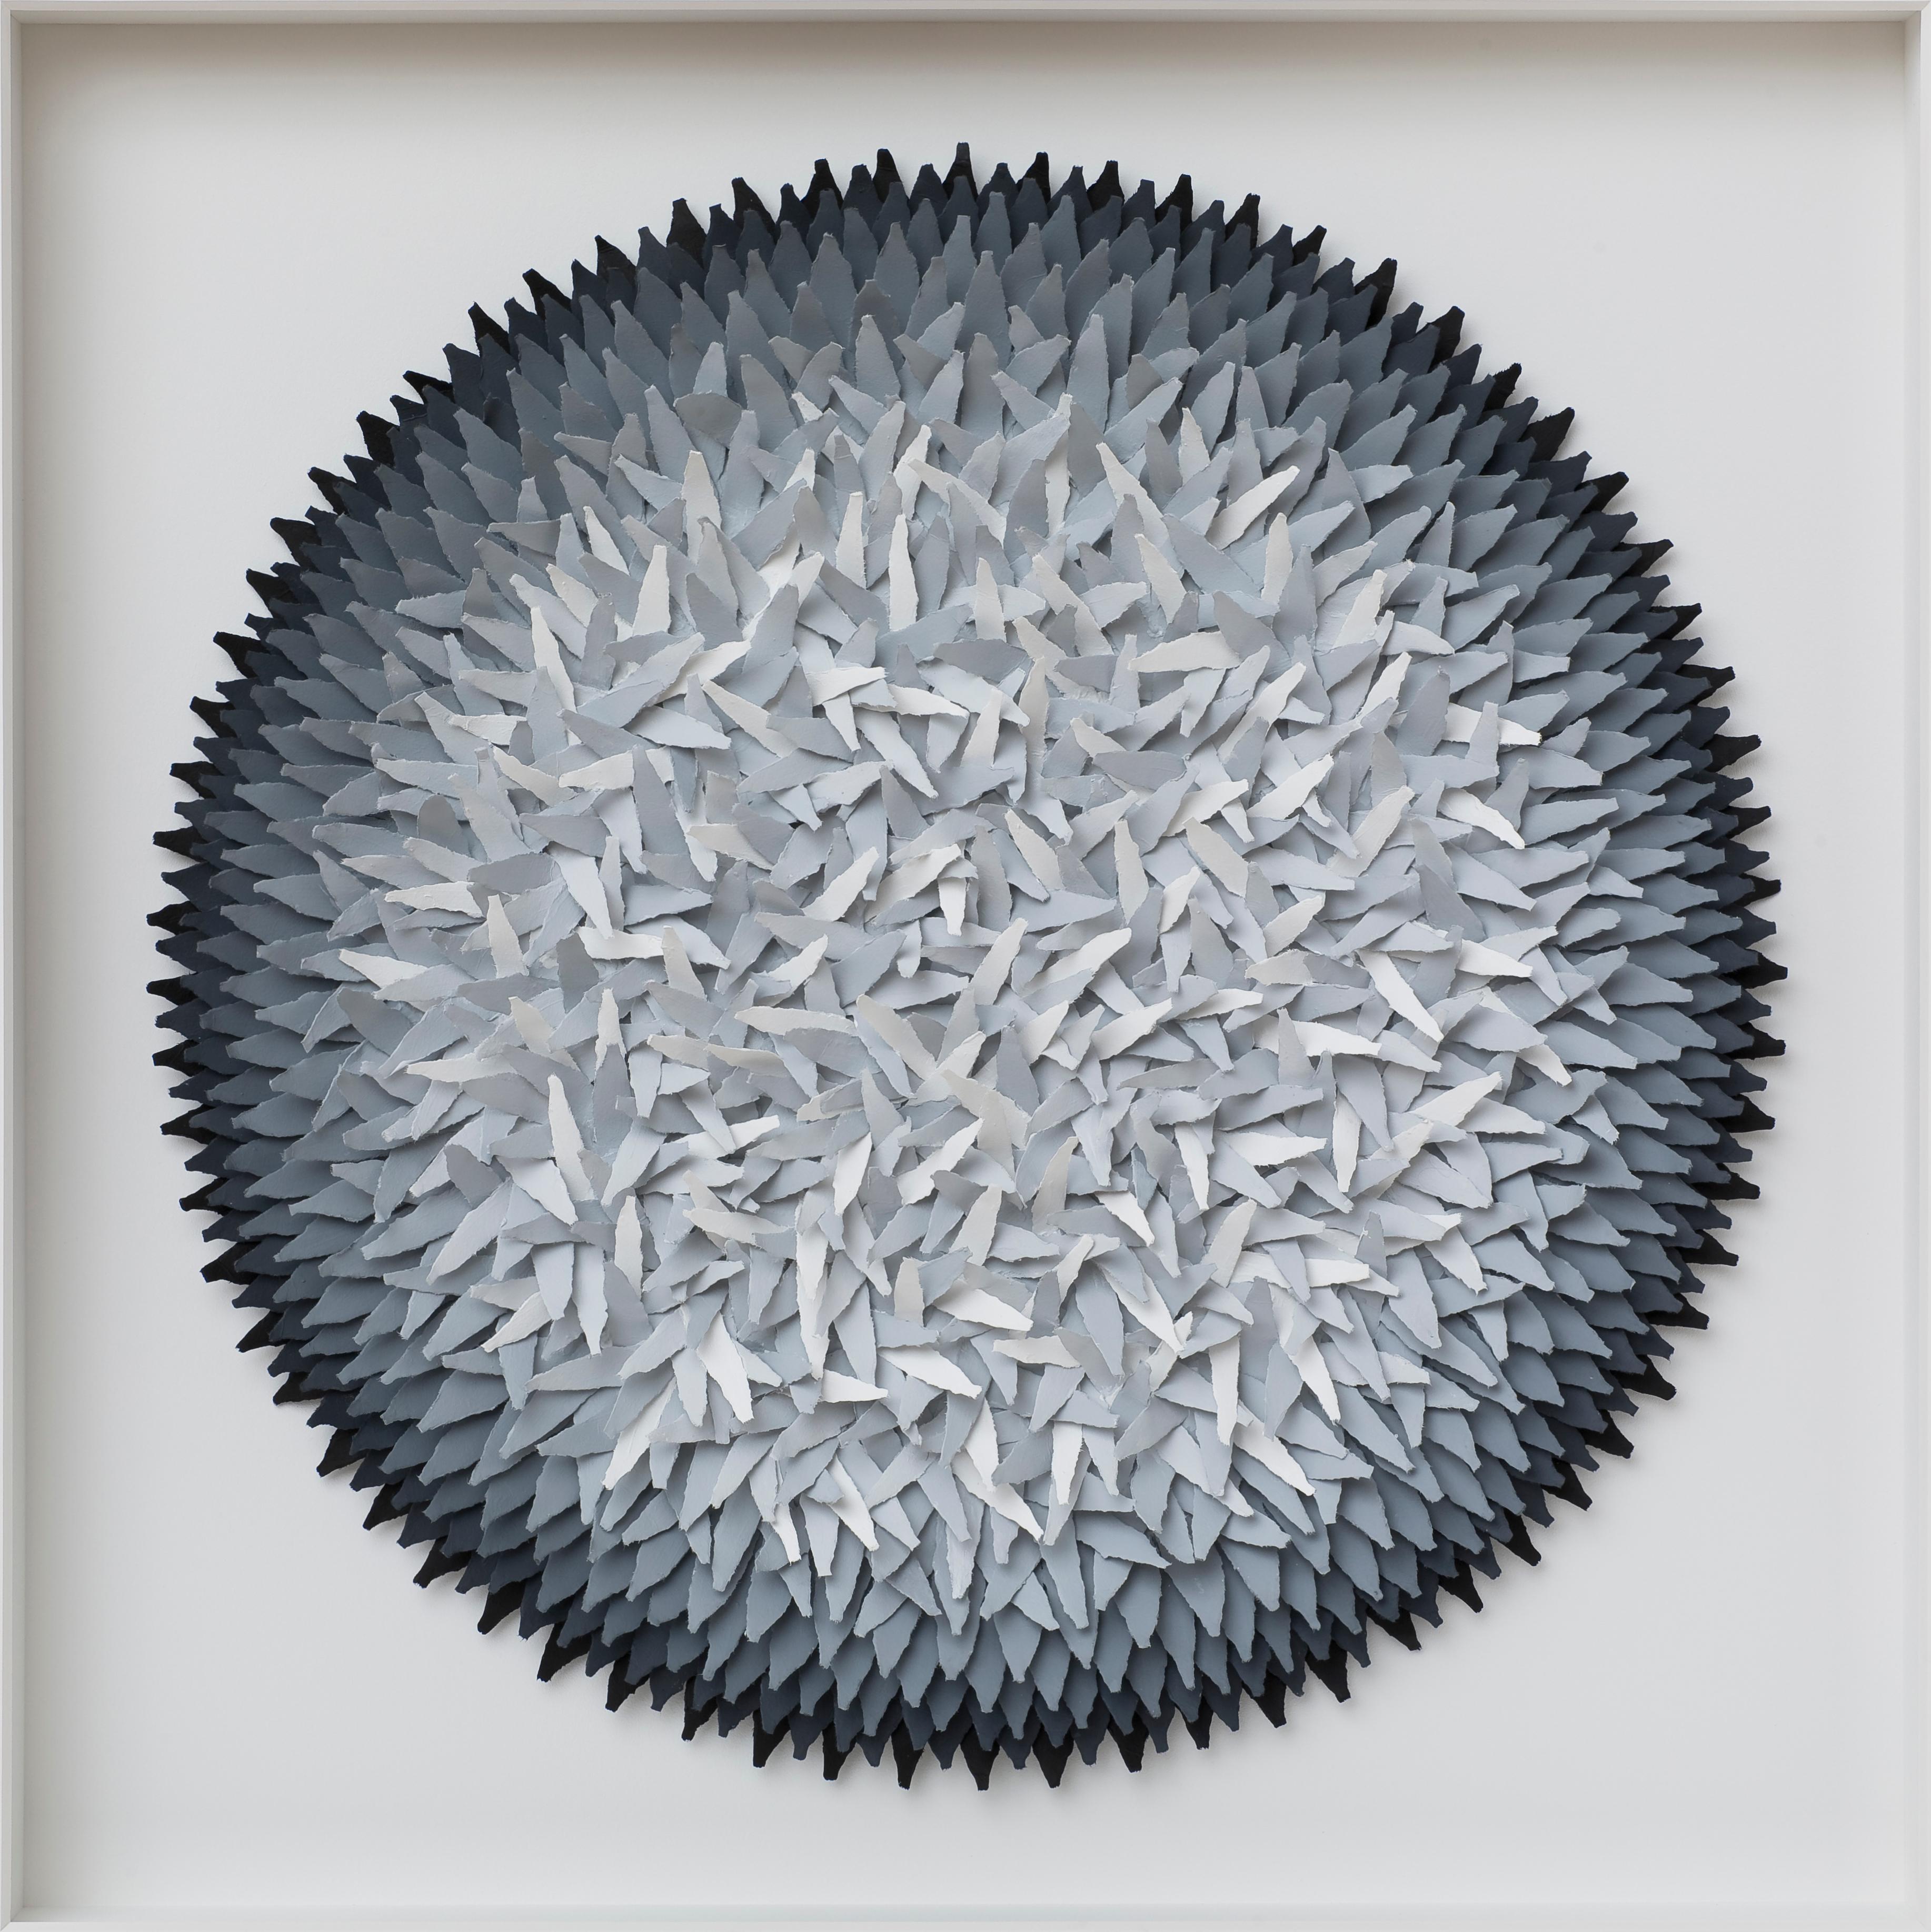 Assemblage Grauer Gradient – abstraktes zeitgenössisches dreidimensionales Kunstwerk  (Abstrakt), Mixed Media Art, von Volker Kuhn